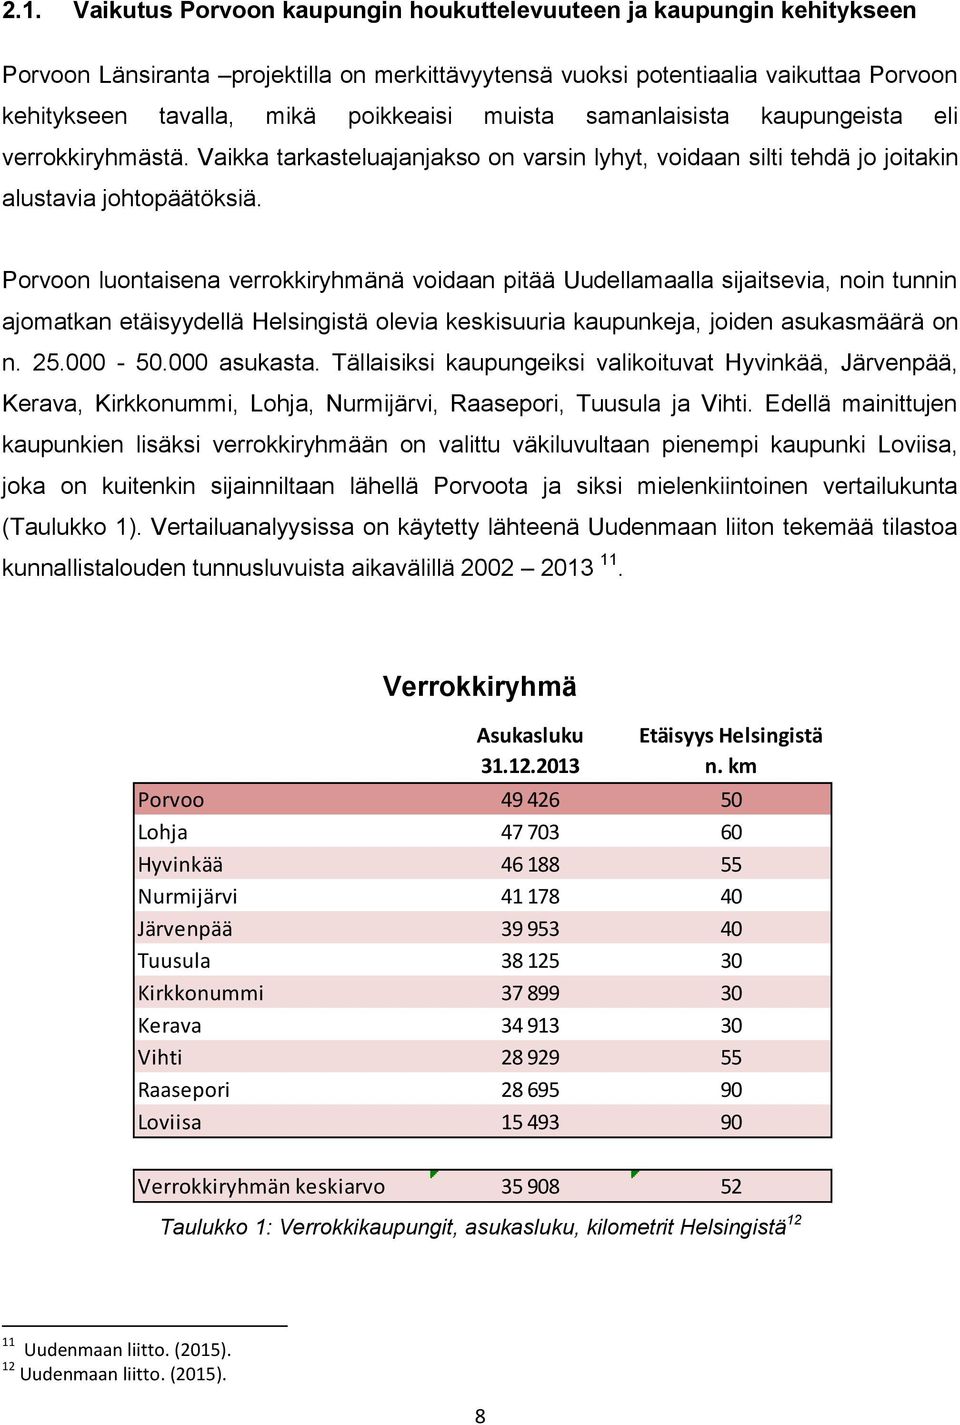 Porvoon luontaisena verrokkiryhmänä voidaan pitää Uudellamaalla sijaitsevia, noin tunnin ajomatkan etäisyydellä Helsingistä olevia keskisuuria kaupunkeja, joiden asukasmäärä on n. 25.000-50.